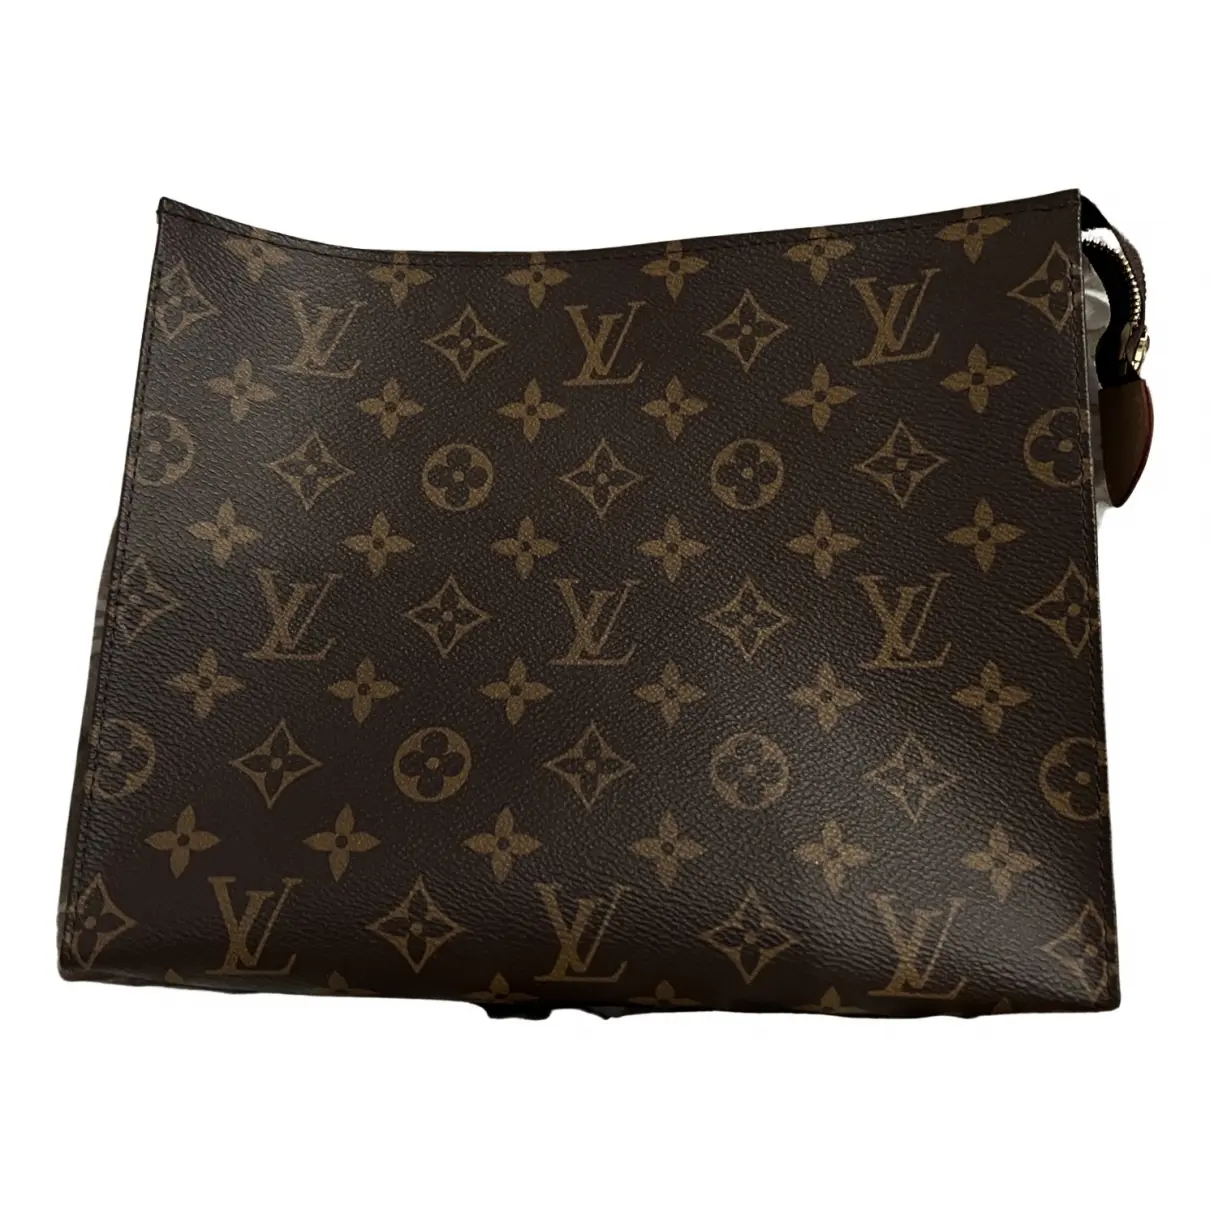 Vegan leather clutch Louis Vuitton